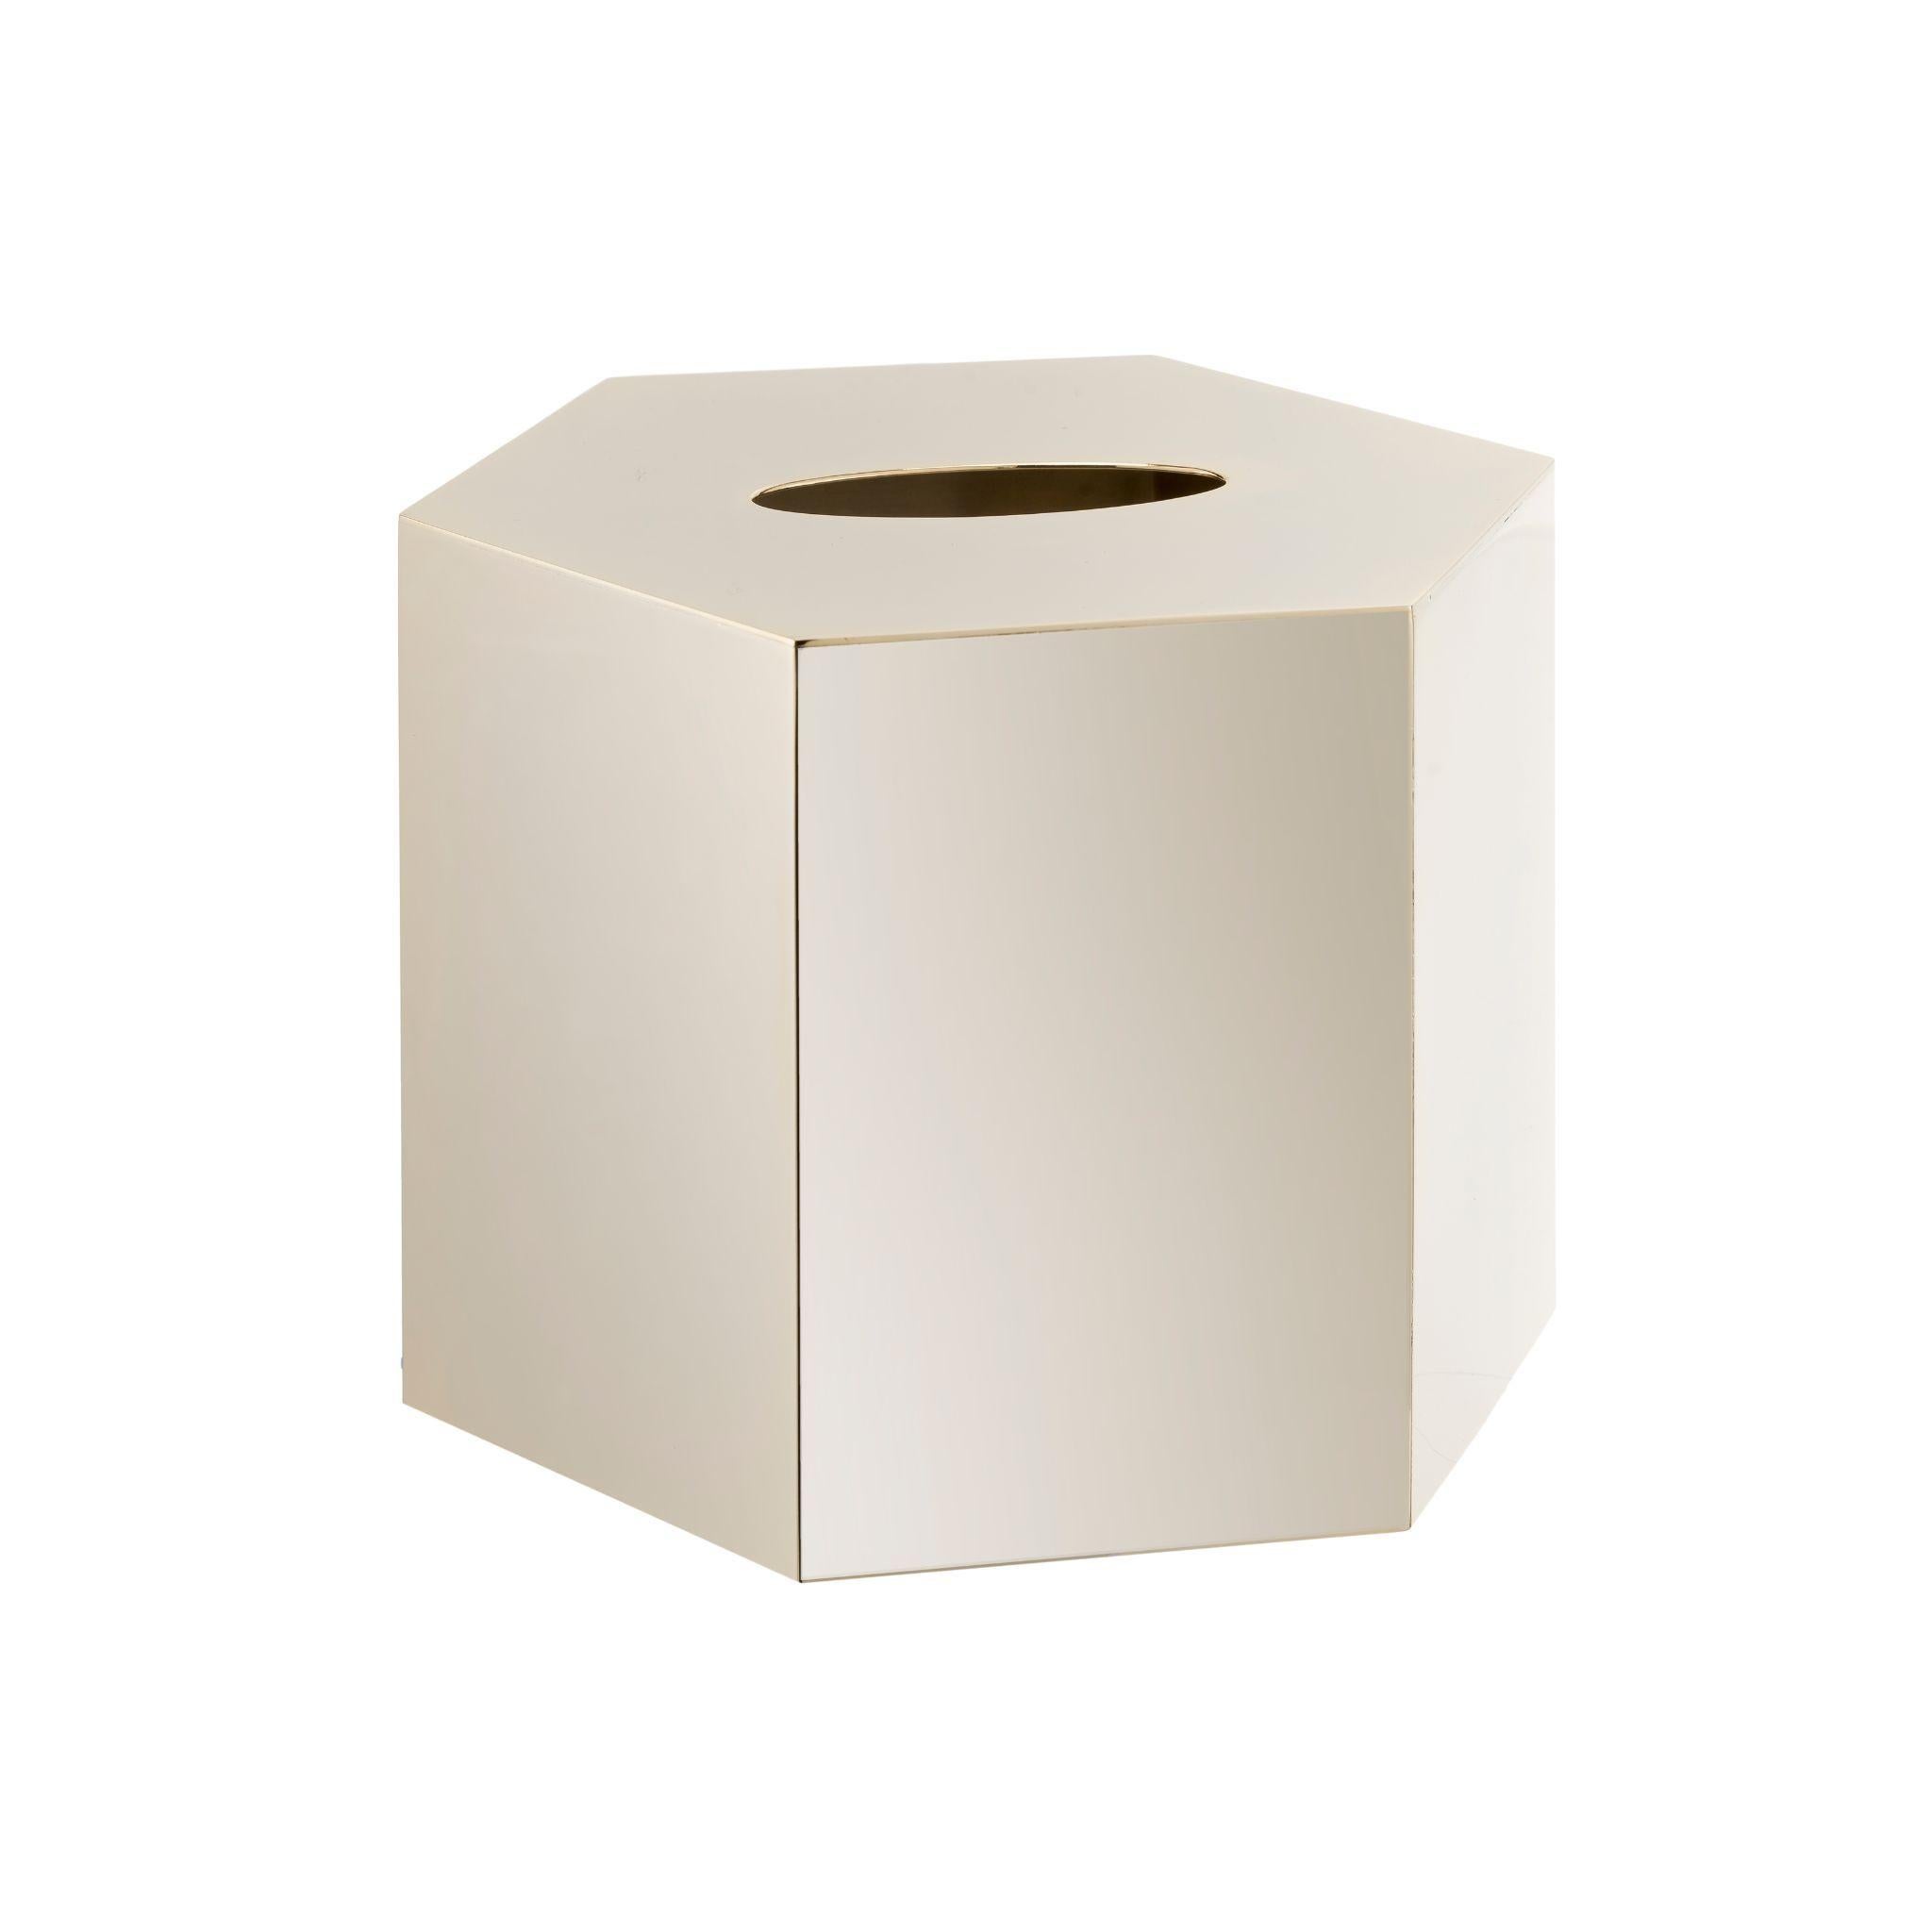 Verleihen Sie Ihrer Einrichtung einen Hauch von Eleganz mit unserer sechseckigen Kleenex-Box aus Messing. Das einzigartige und stilvolle Design aus hochwertigem Messing verleiht jedem Raum Raffinesse. Er eignet sich perfekt für die stilvolle